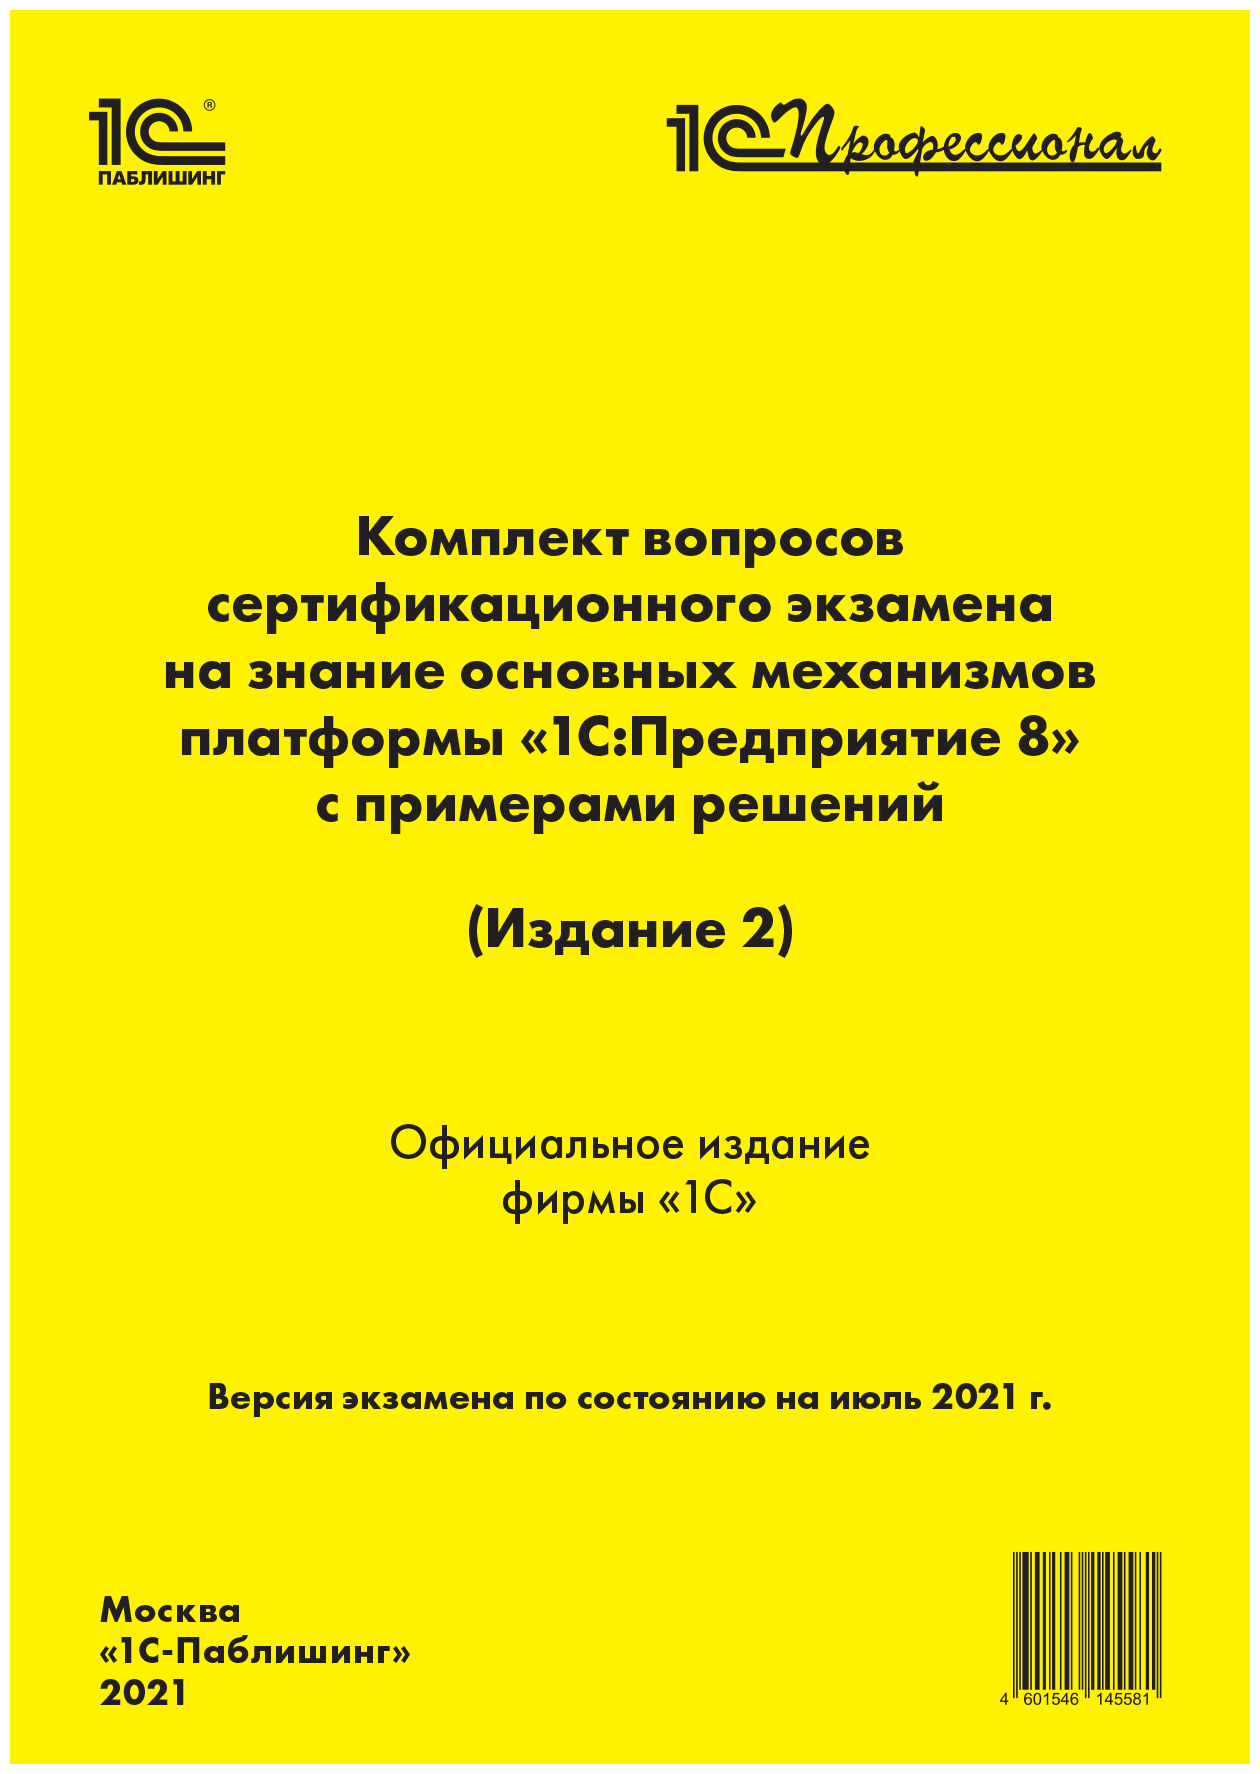 Комплект вопросов экзамена 1С: Осн. мех. платформы 8.3 (Издание 2), июль 2021